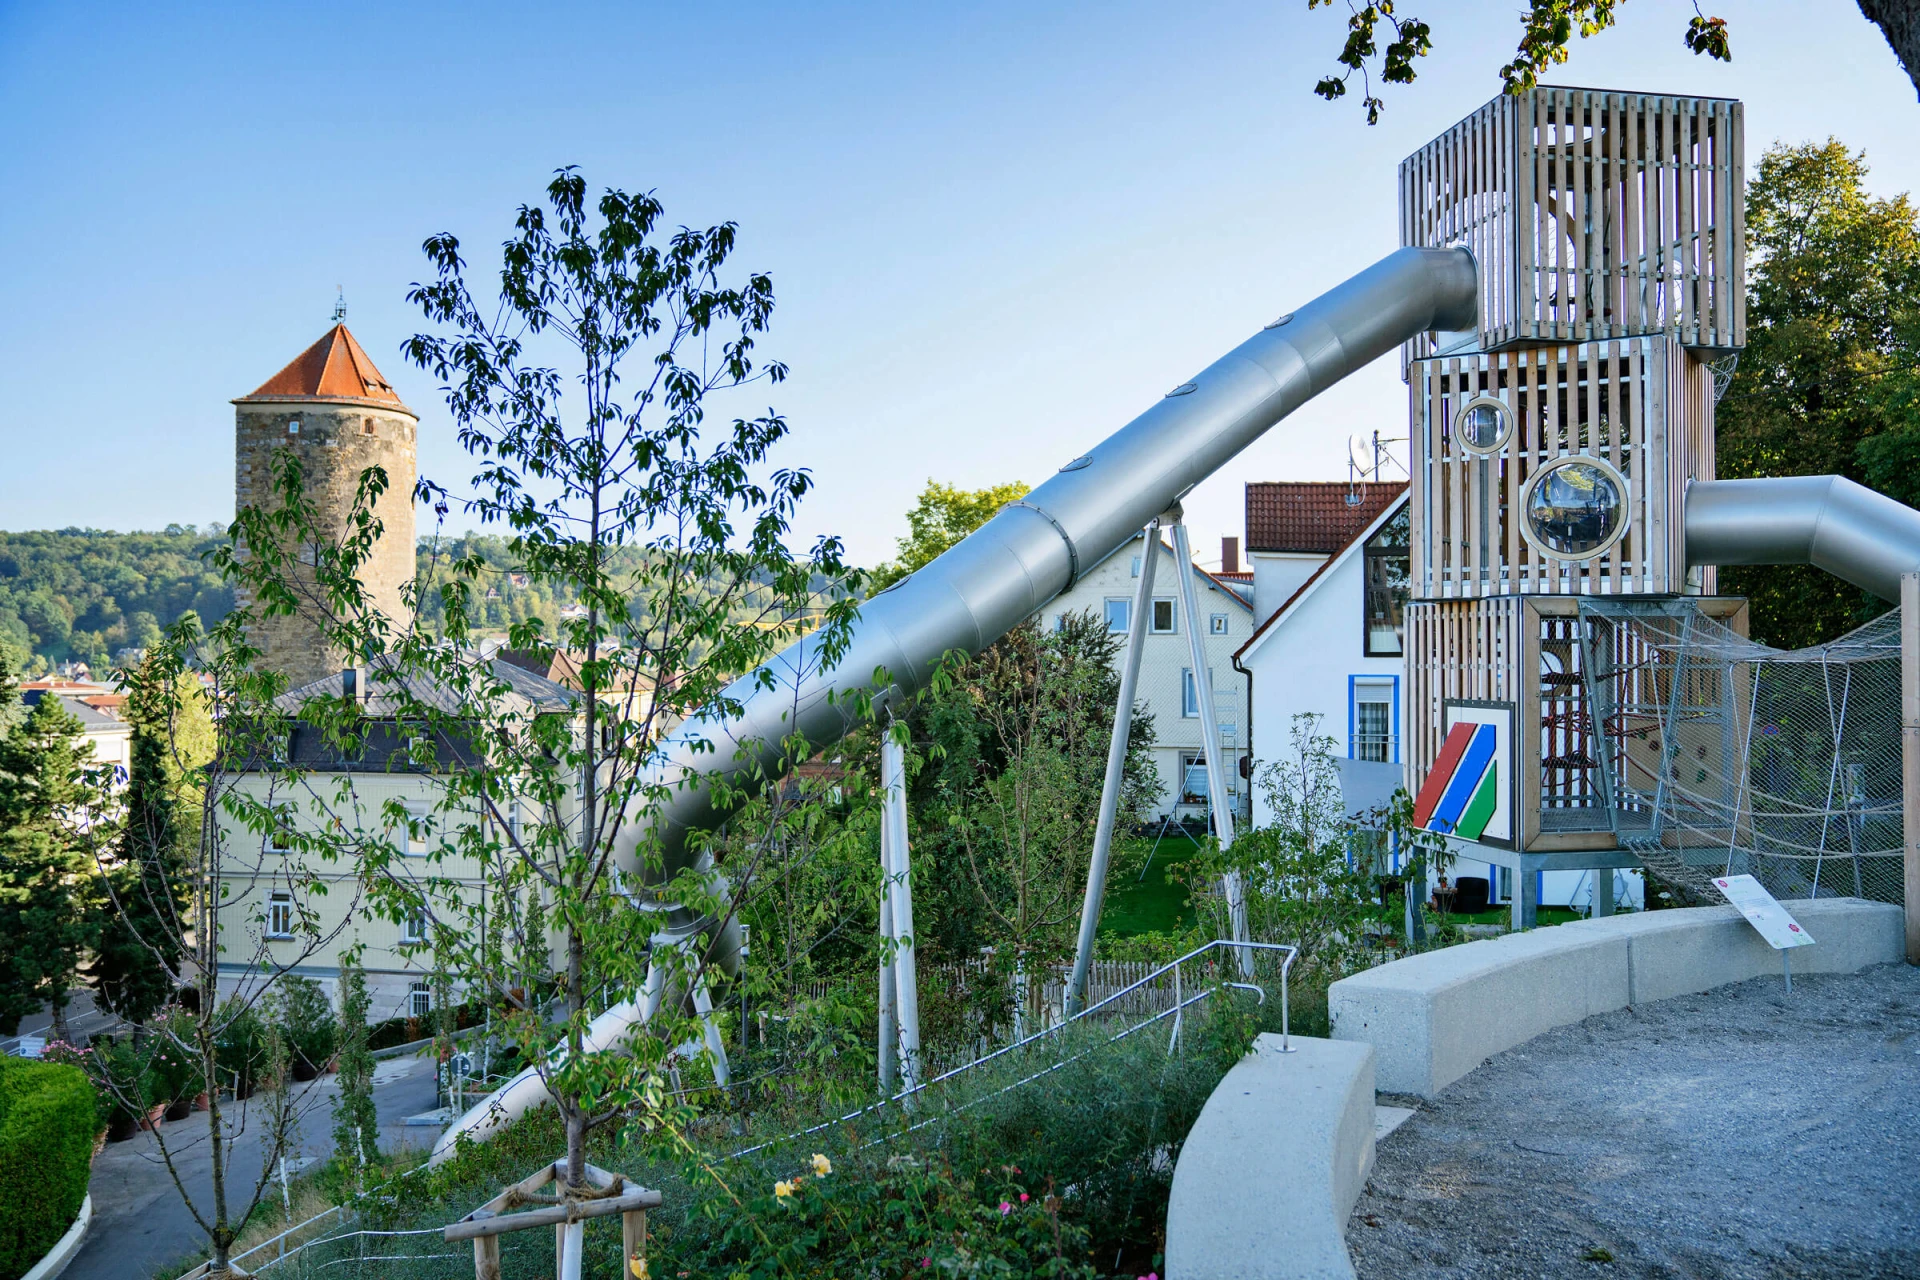 corocord klättertorn erbjuder klätterlek i Tyskland